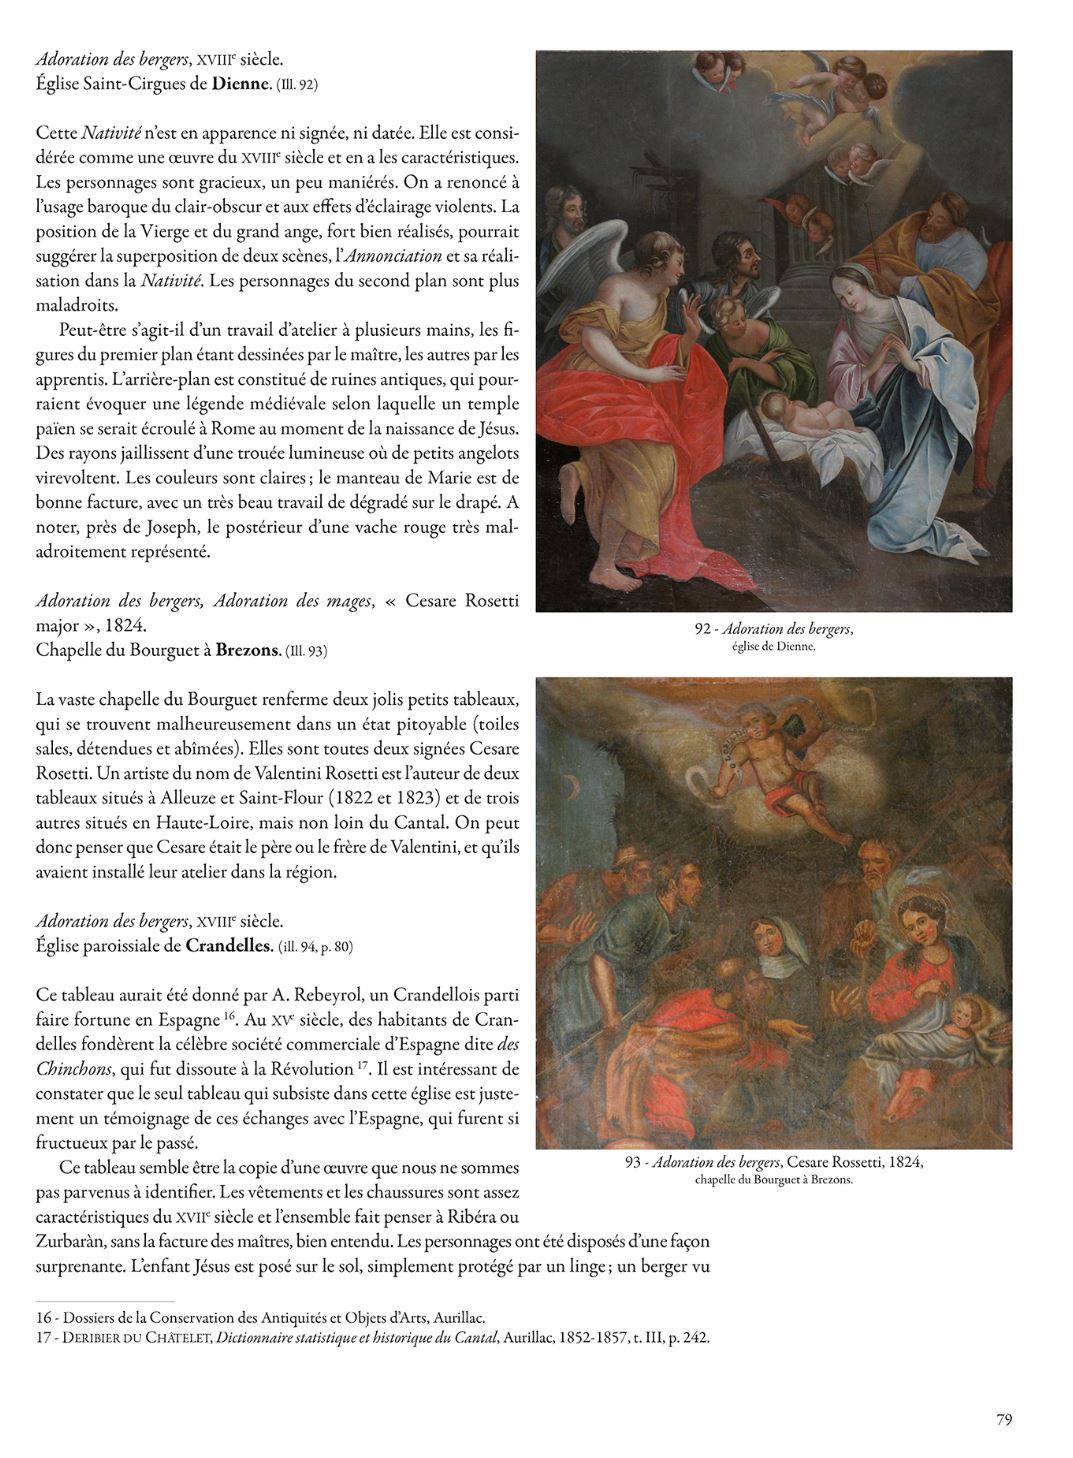 Moulier La peinture religieuse en Haute-Auvergne XVIIe - XXe siècles